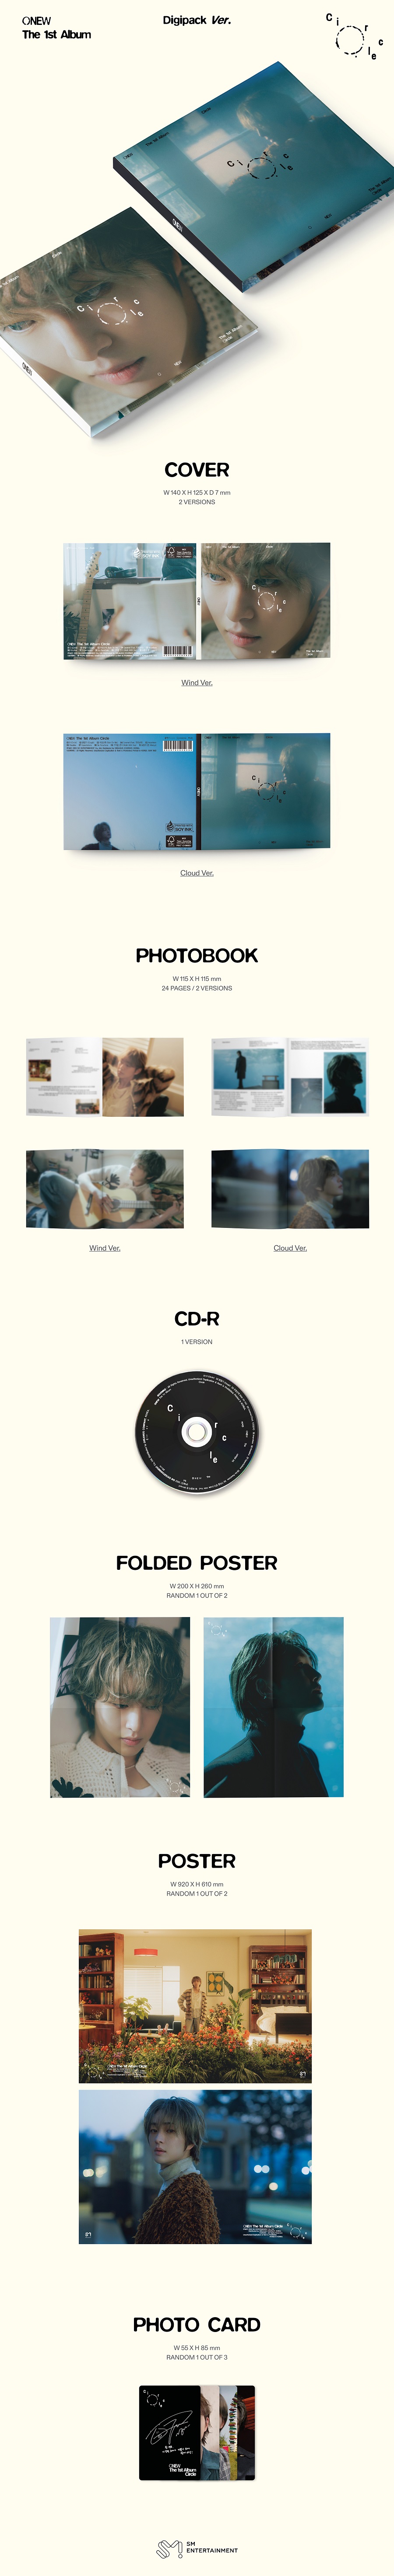 온유(ONEW) - 정규앨범 1집_’Circle’ (Digipack Ver.) 커버랜덤